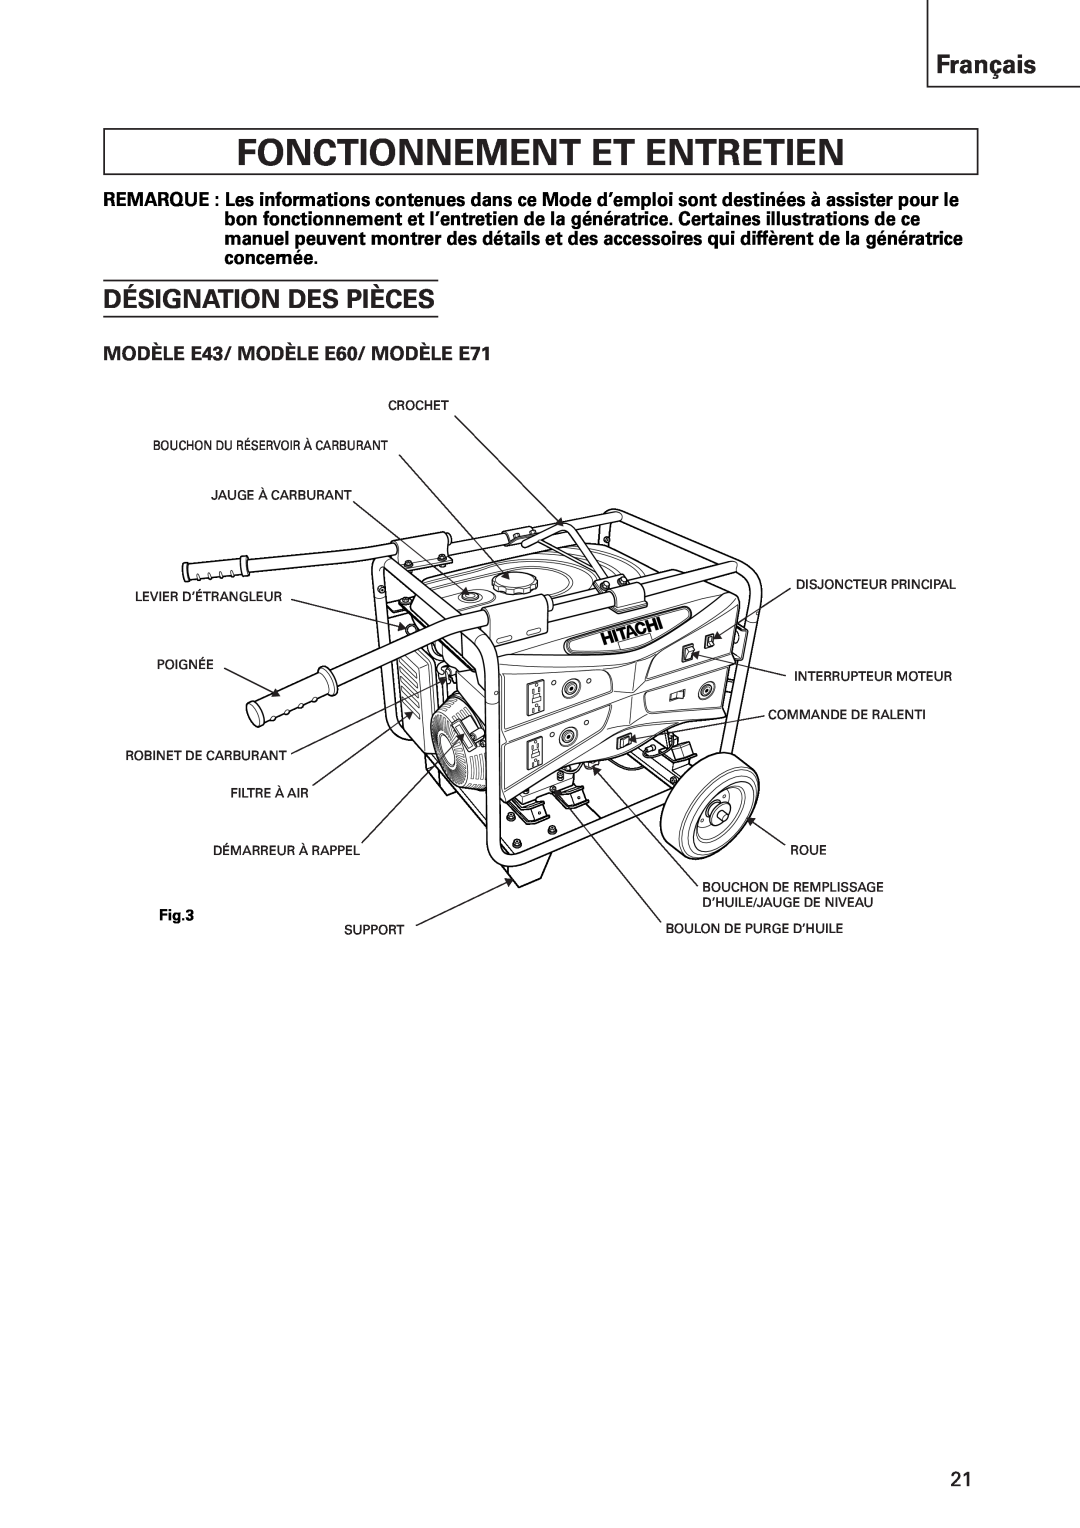 Hitachi Fonctionnement Et Entretien, Désignation Des Pièces, MODÈLE E43/ MODÈLE E60/ MODÈLE E71, Français 